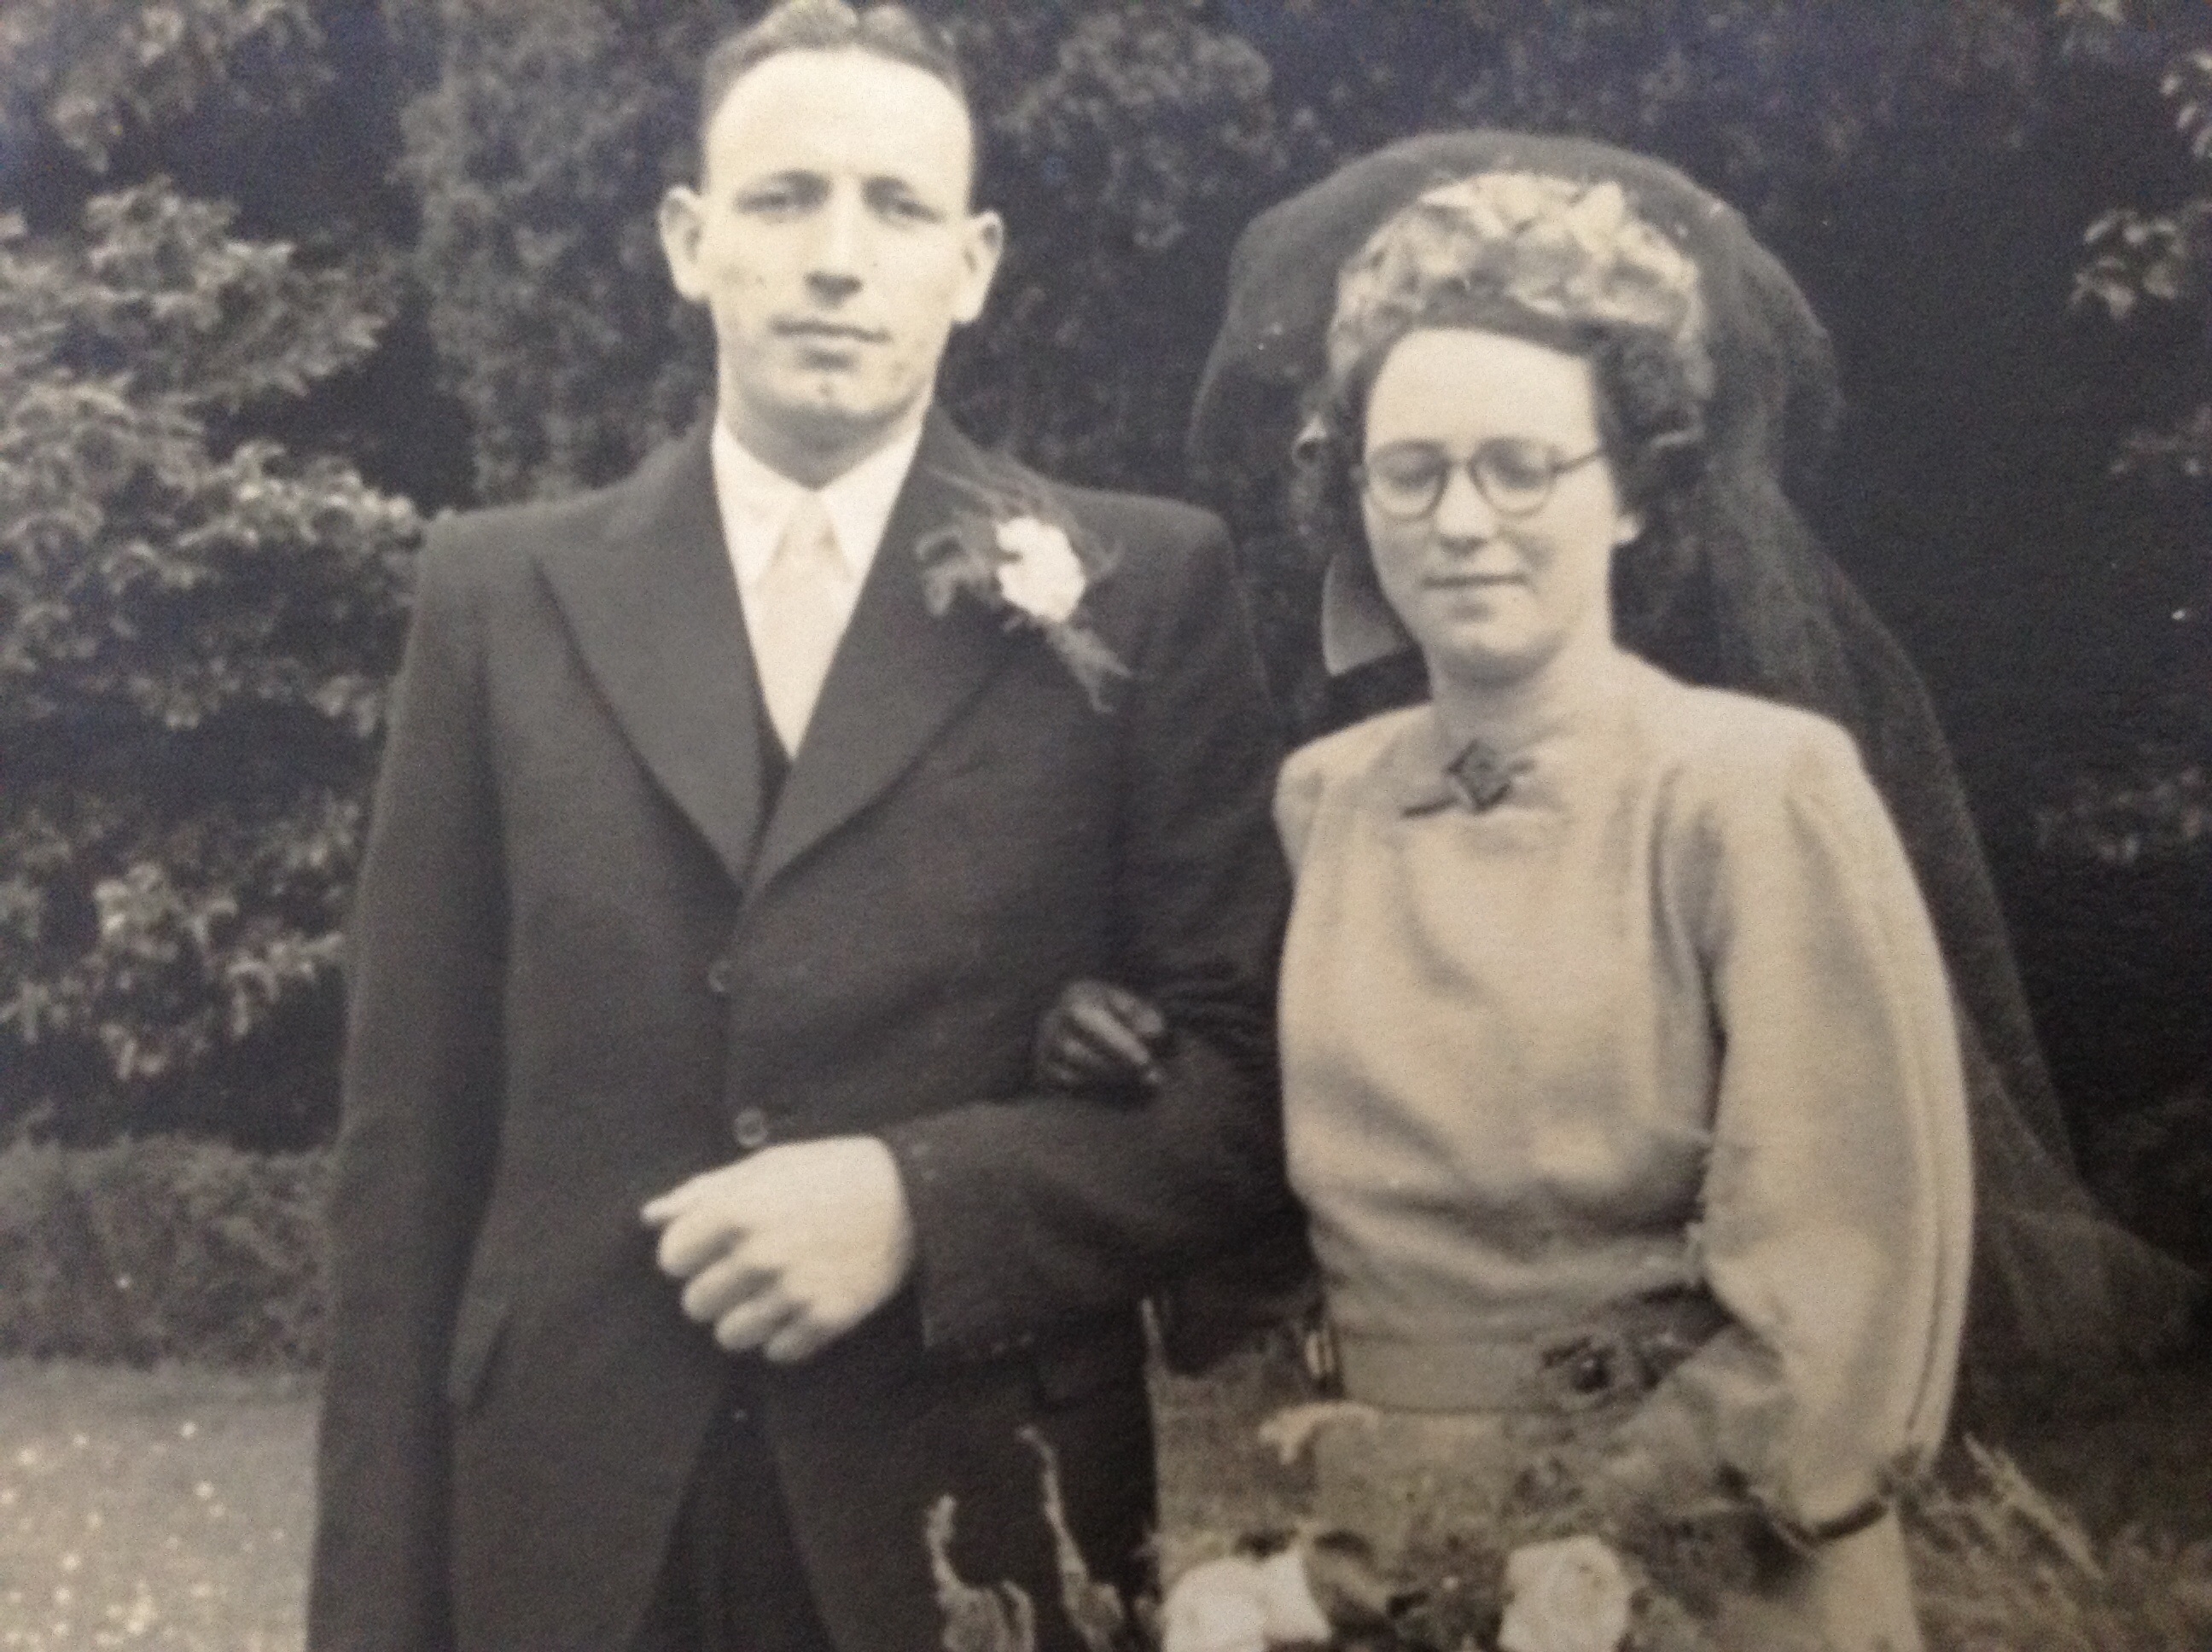 Fredrick & Rita (Hewitt) Dunlop, 1948